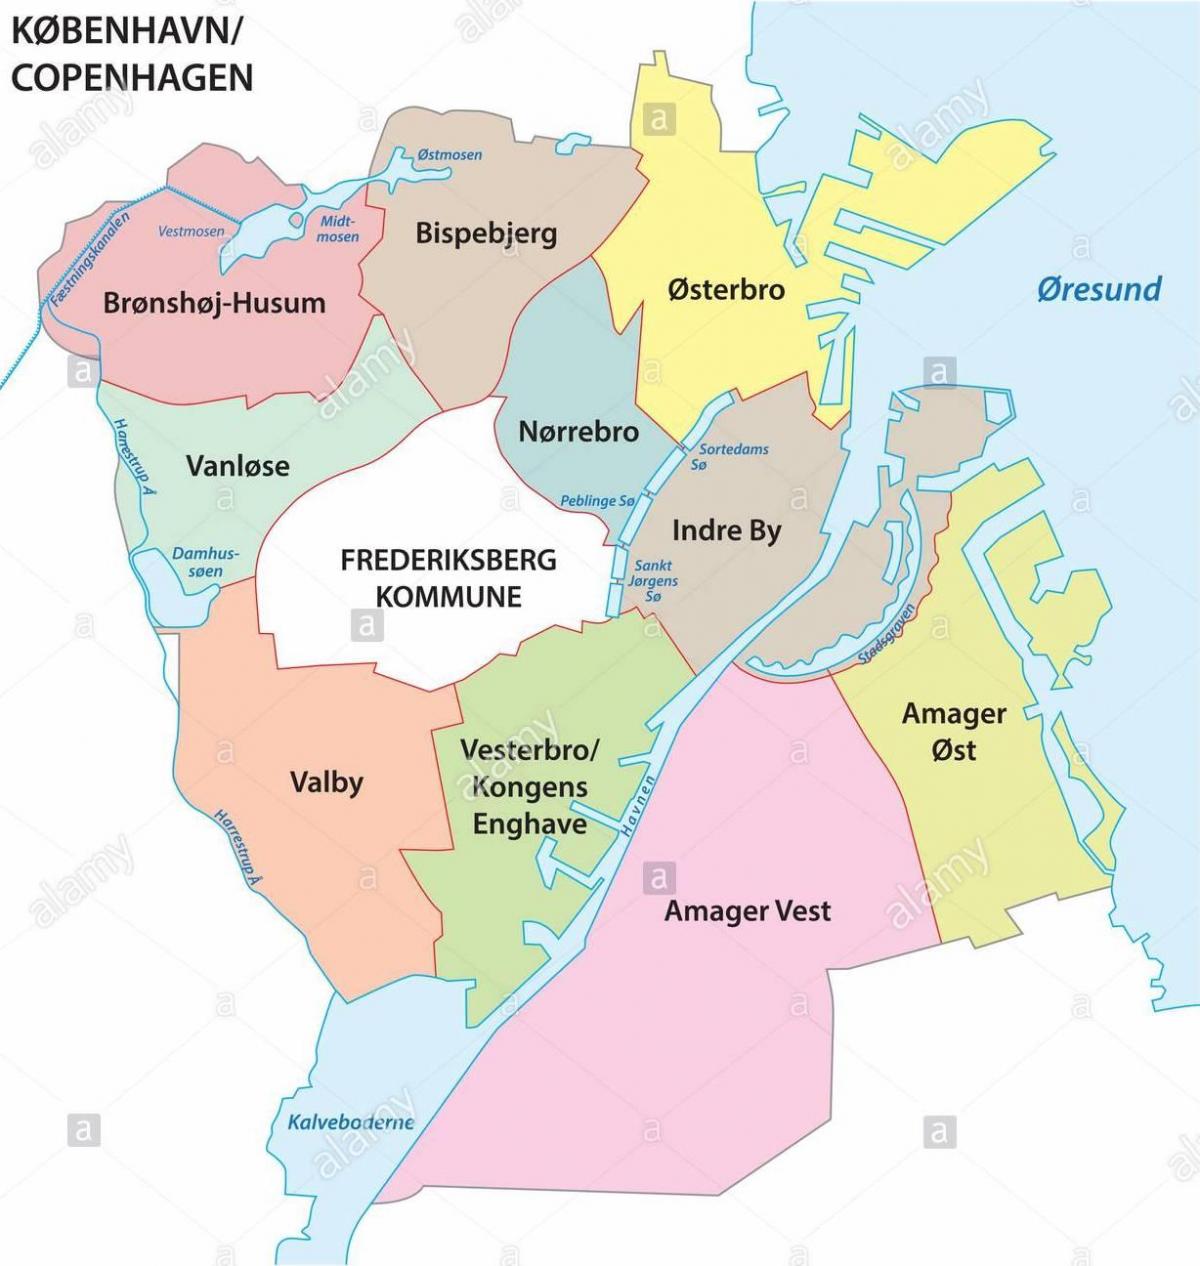 Copenhagen district map